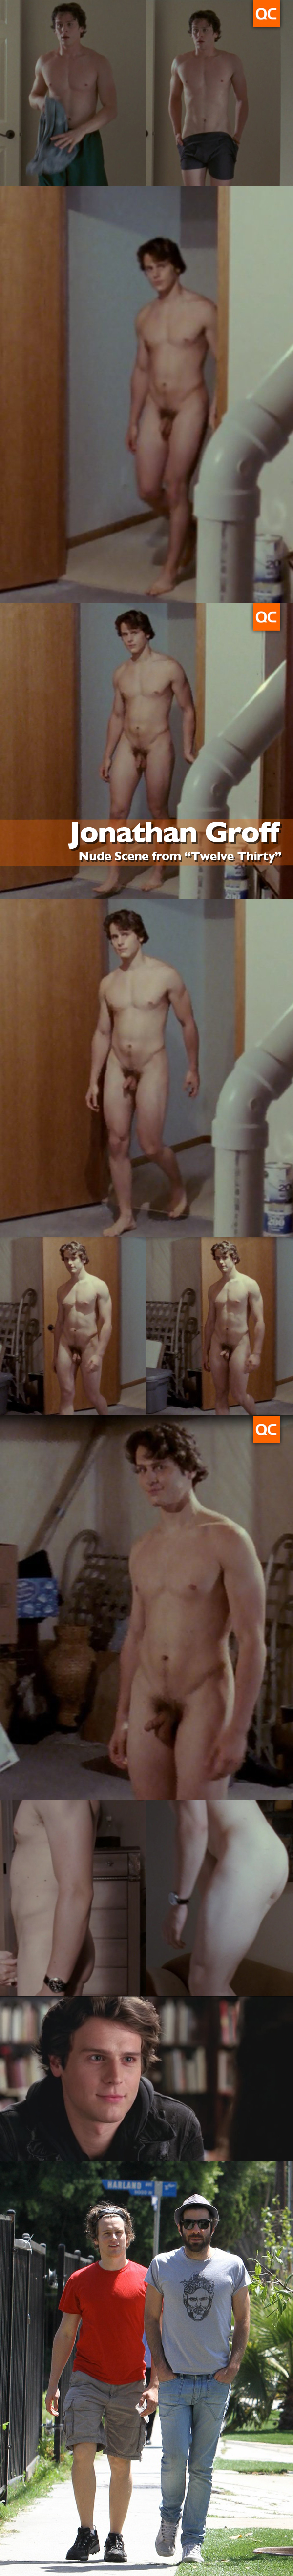 Jonathan groff nude